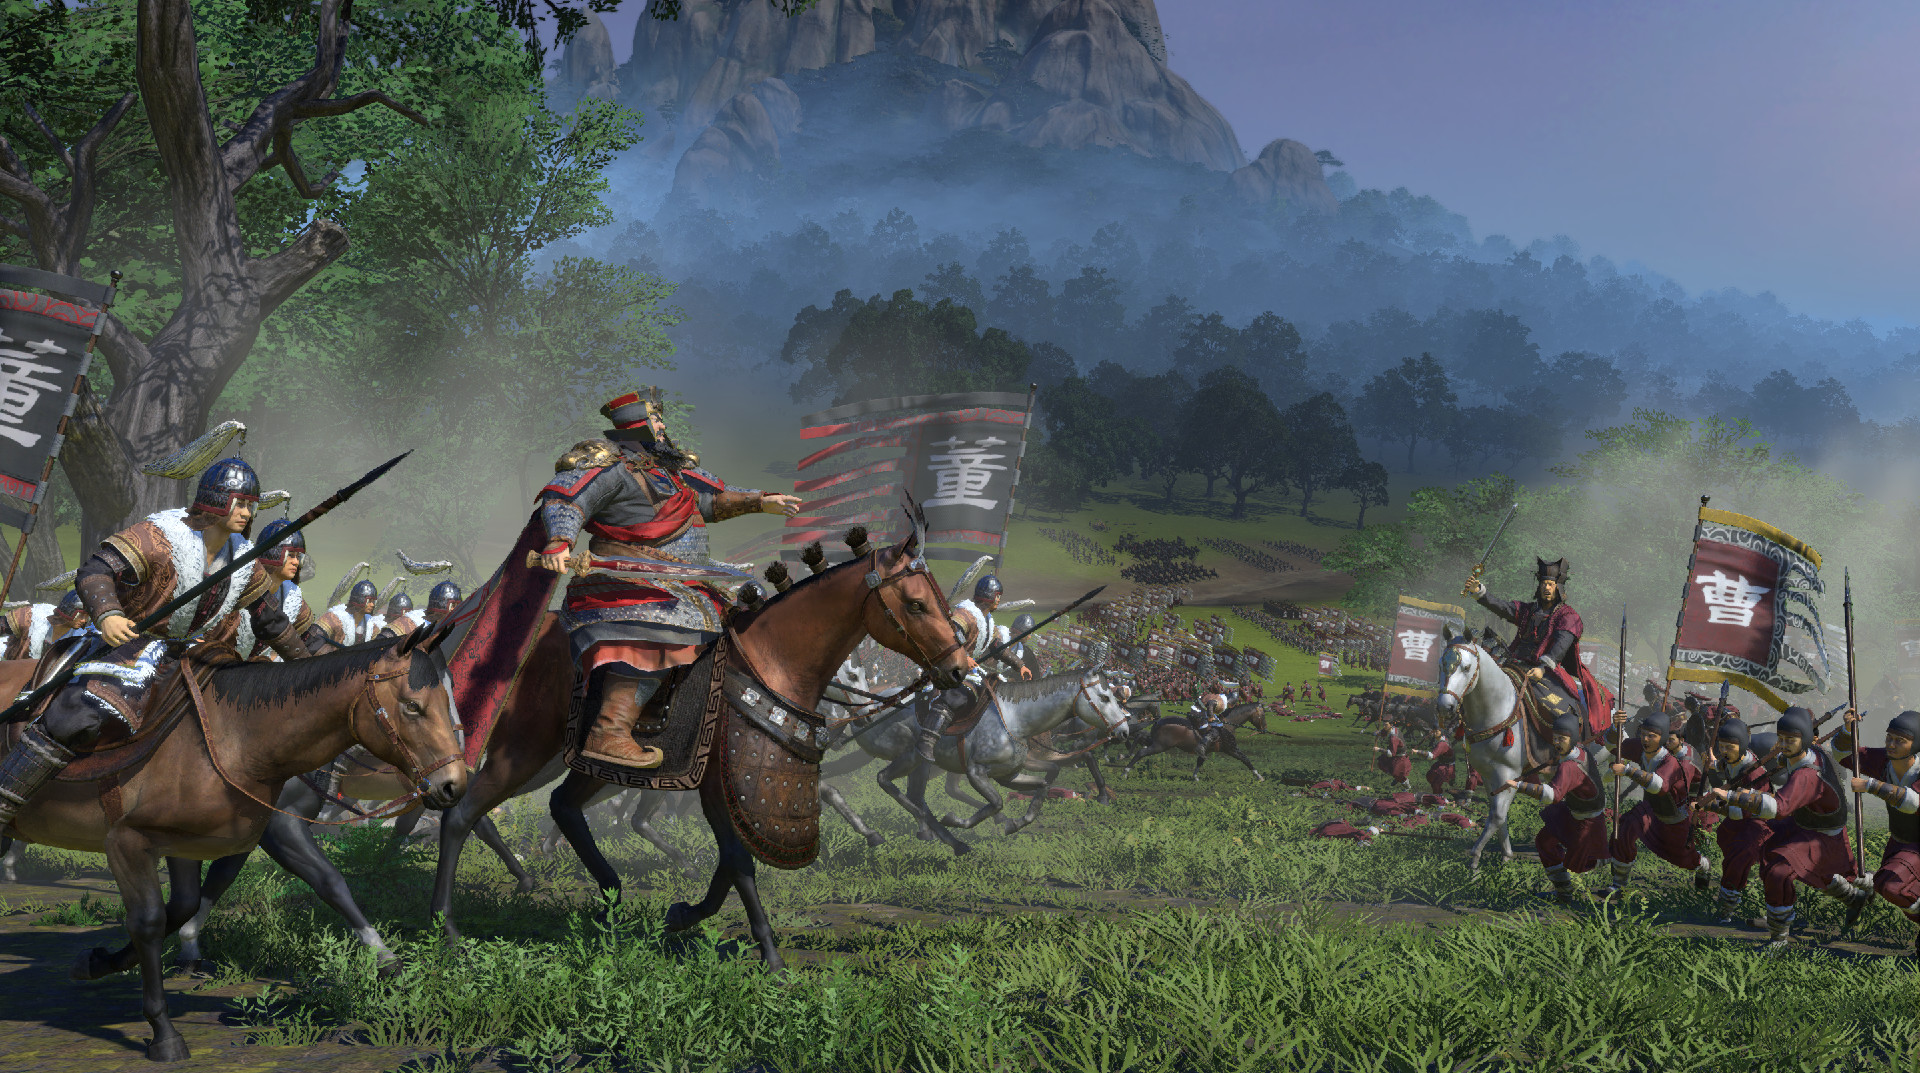 Total War: THREE KINGDOMS Warlord Edition Steam CD Key